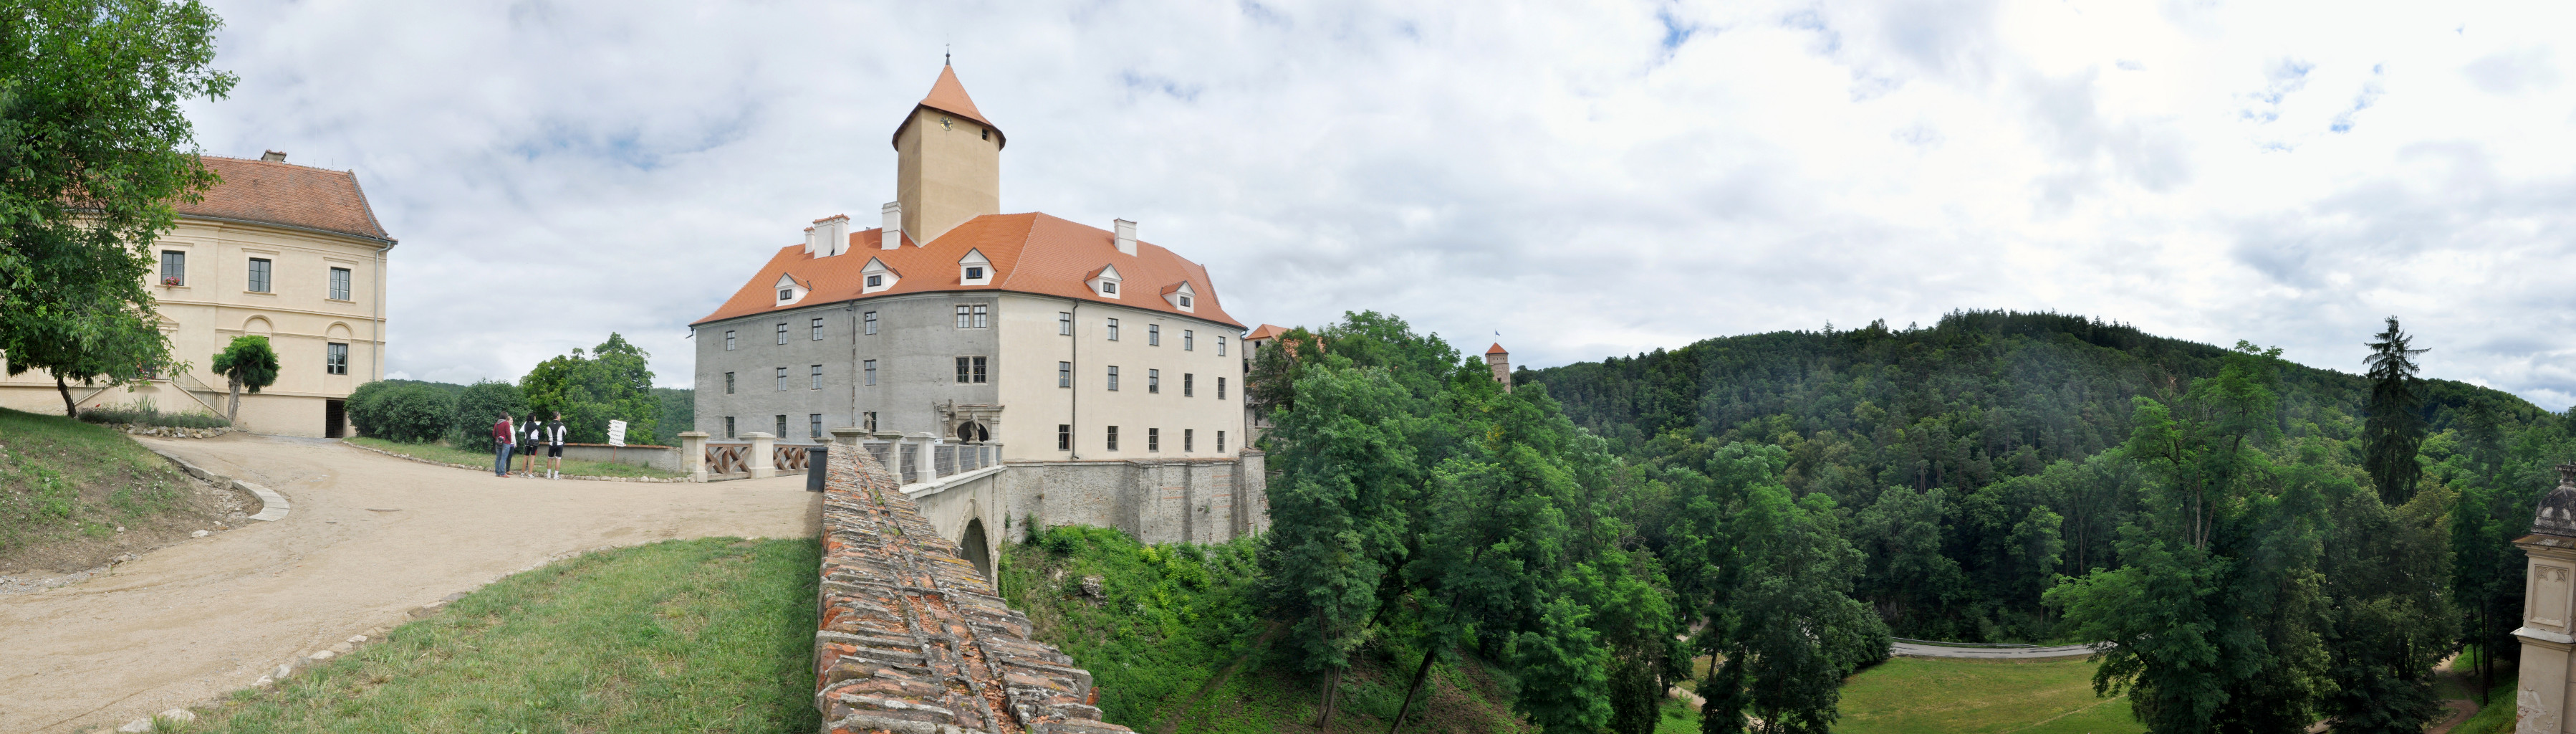 Burg Veveří / Eichorn